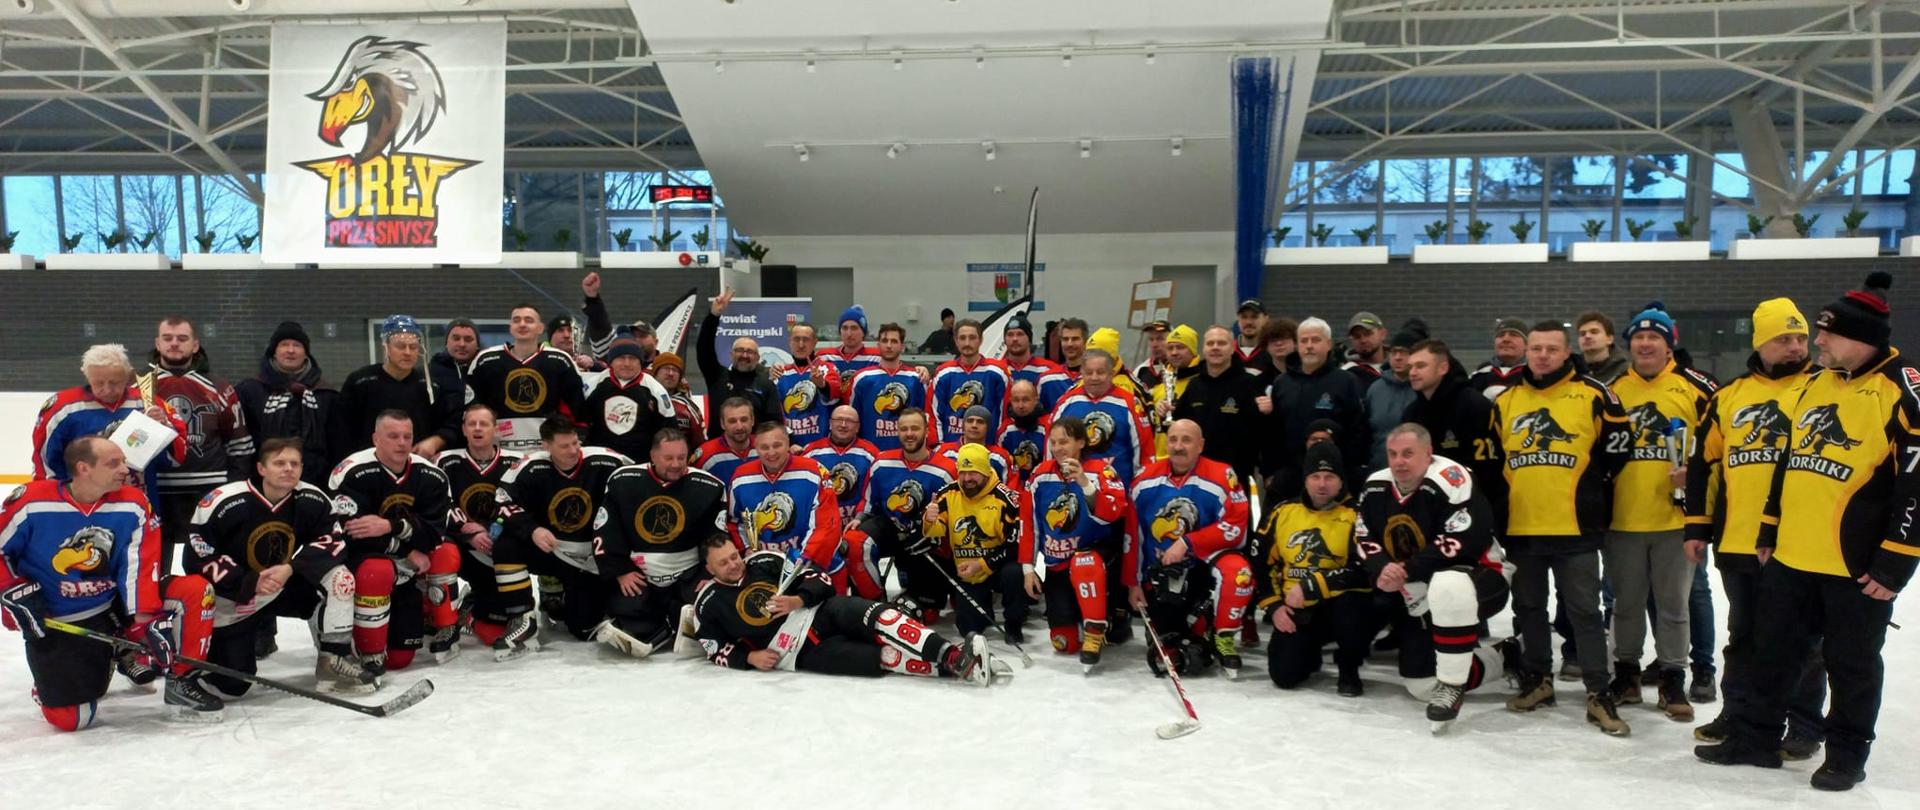 Zdjęcie grupowe zawodników wszystkich drużyn biorących udział w turnieju i Starosty Krzysztofa Bieńkowskiego.